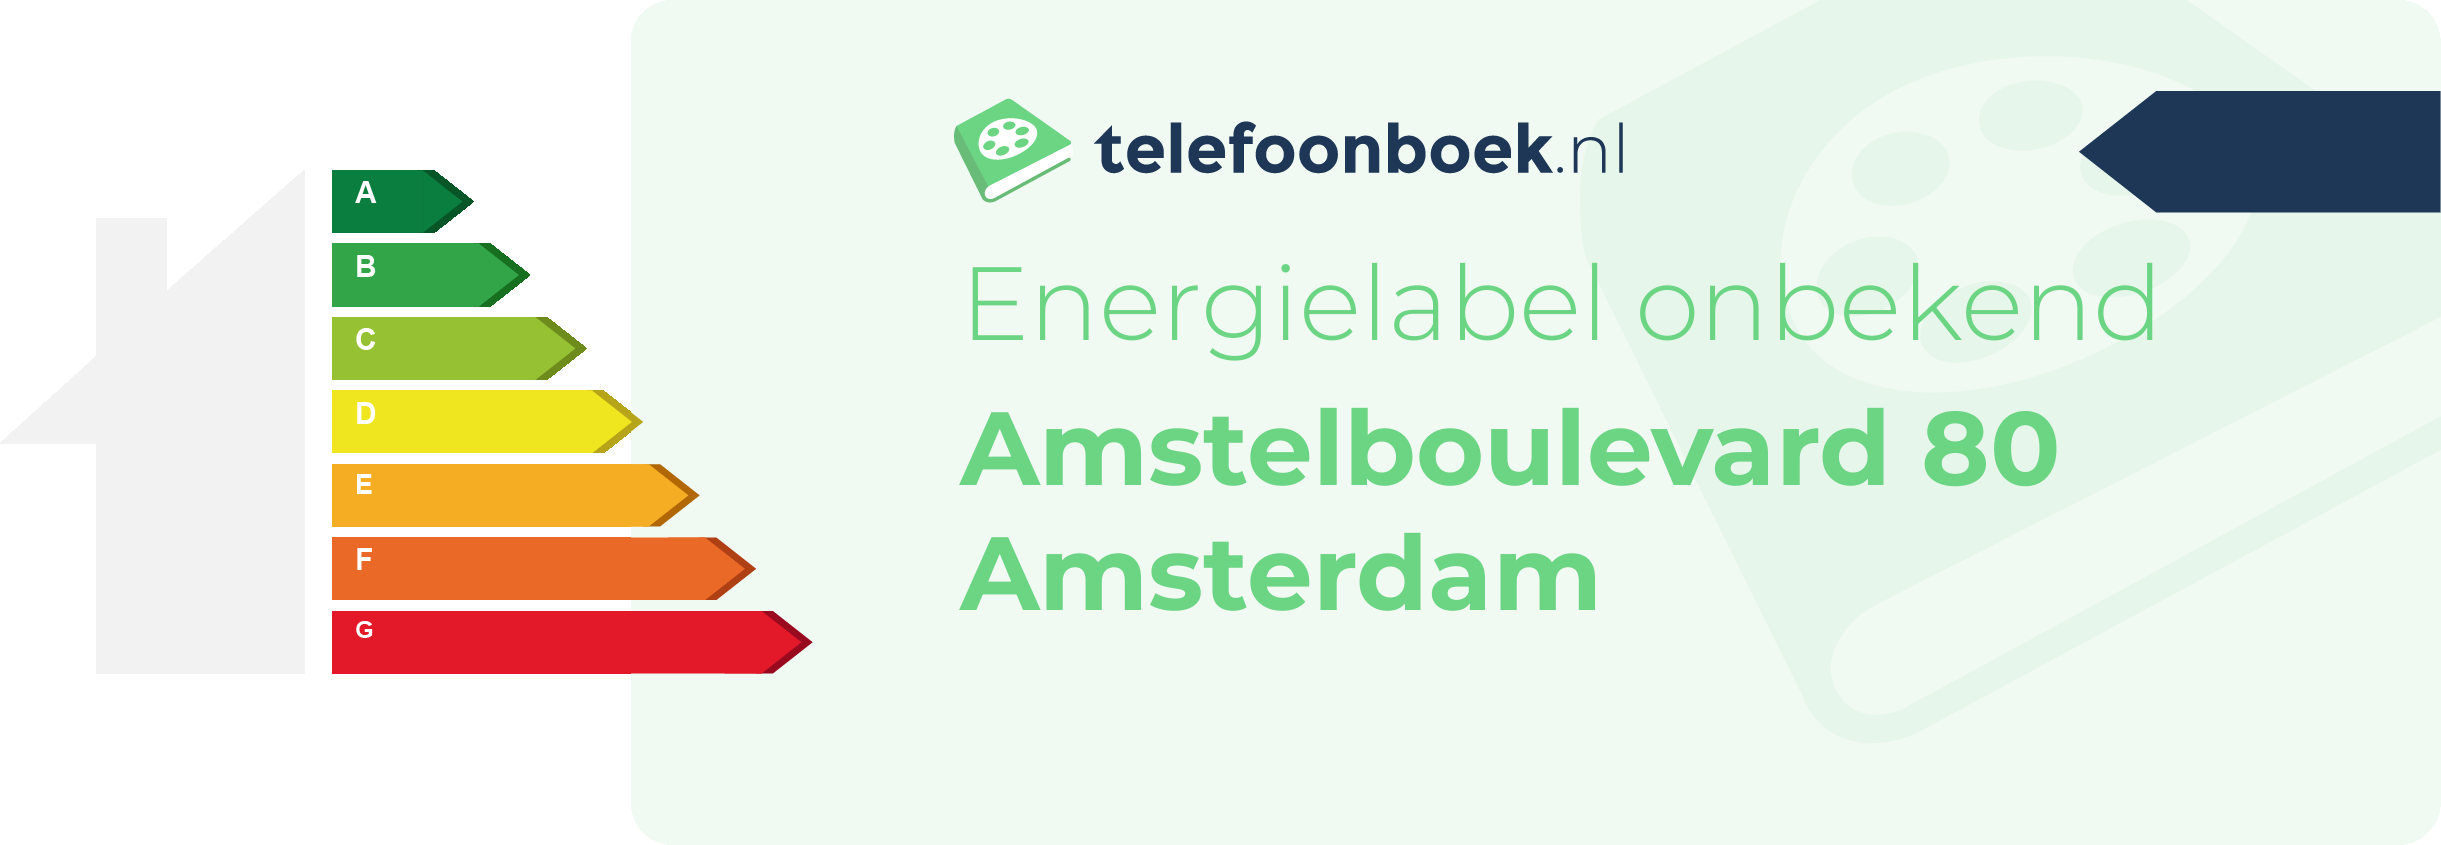 Energielabel Amstelboulevard 80 Amsterdam